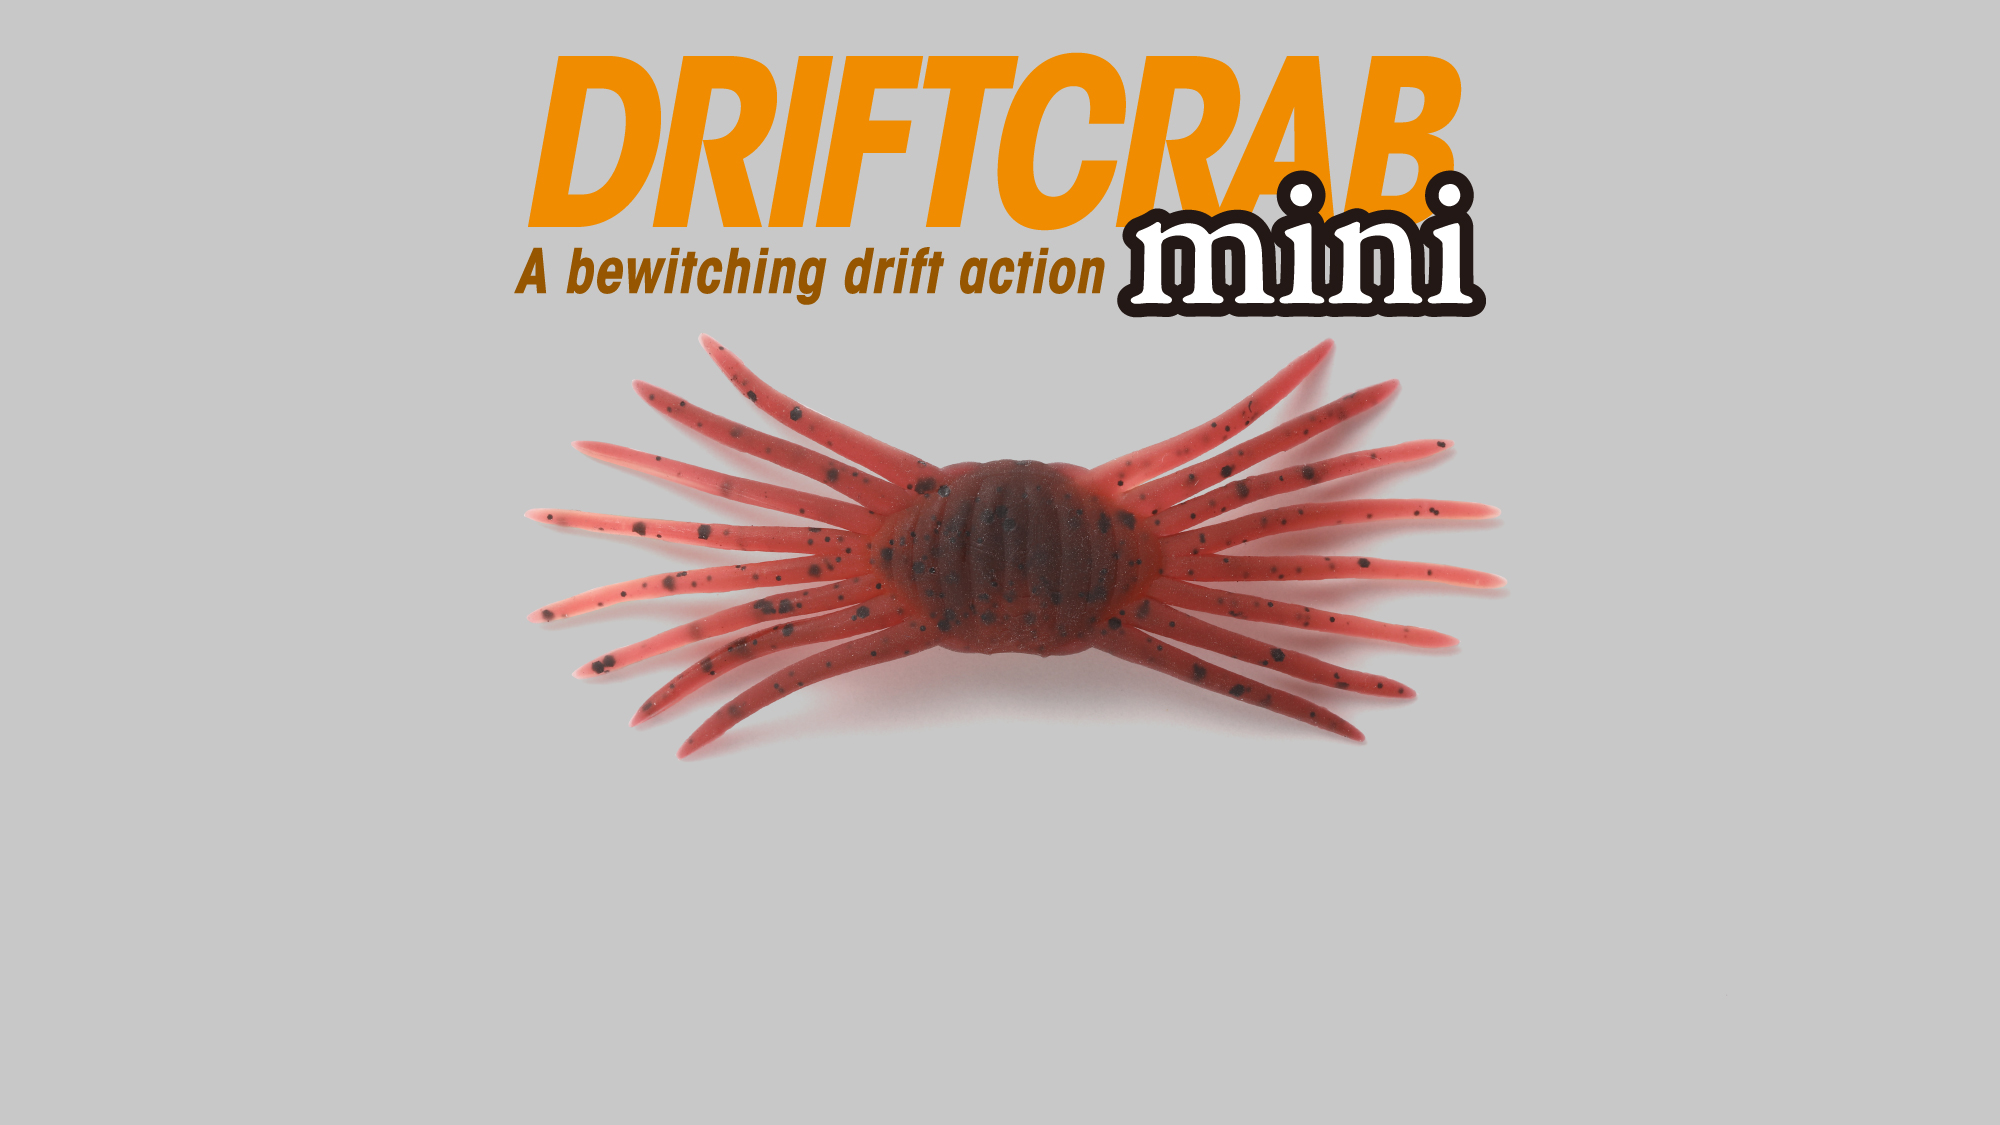  DRIFTCRAB mini / ドリフトクラブミニ